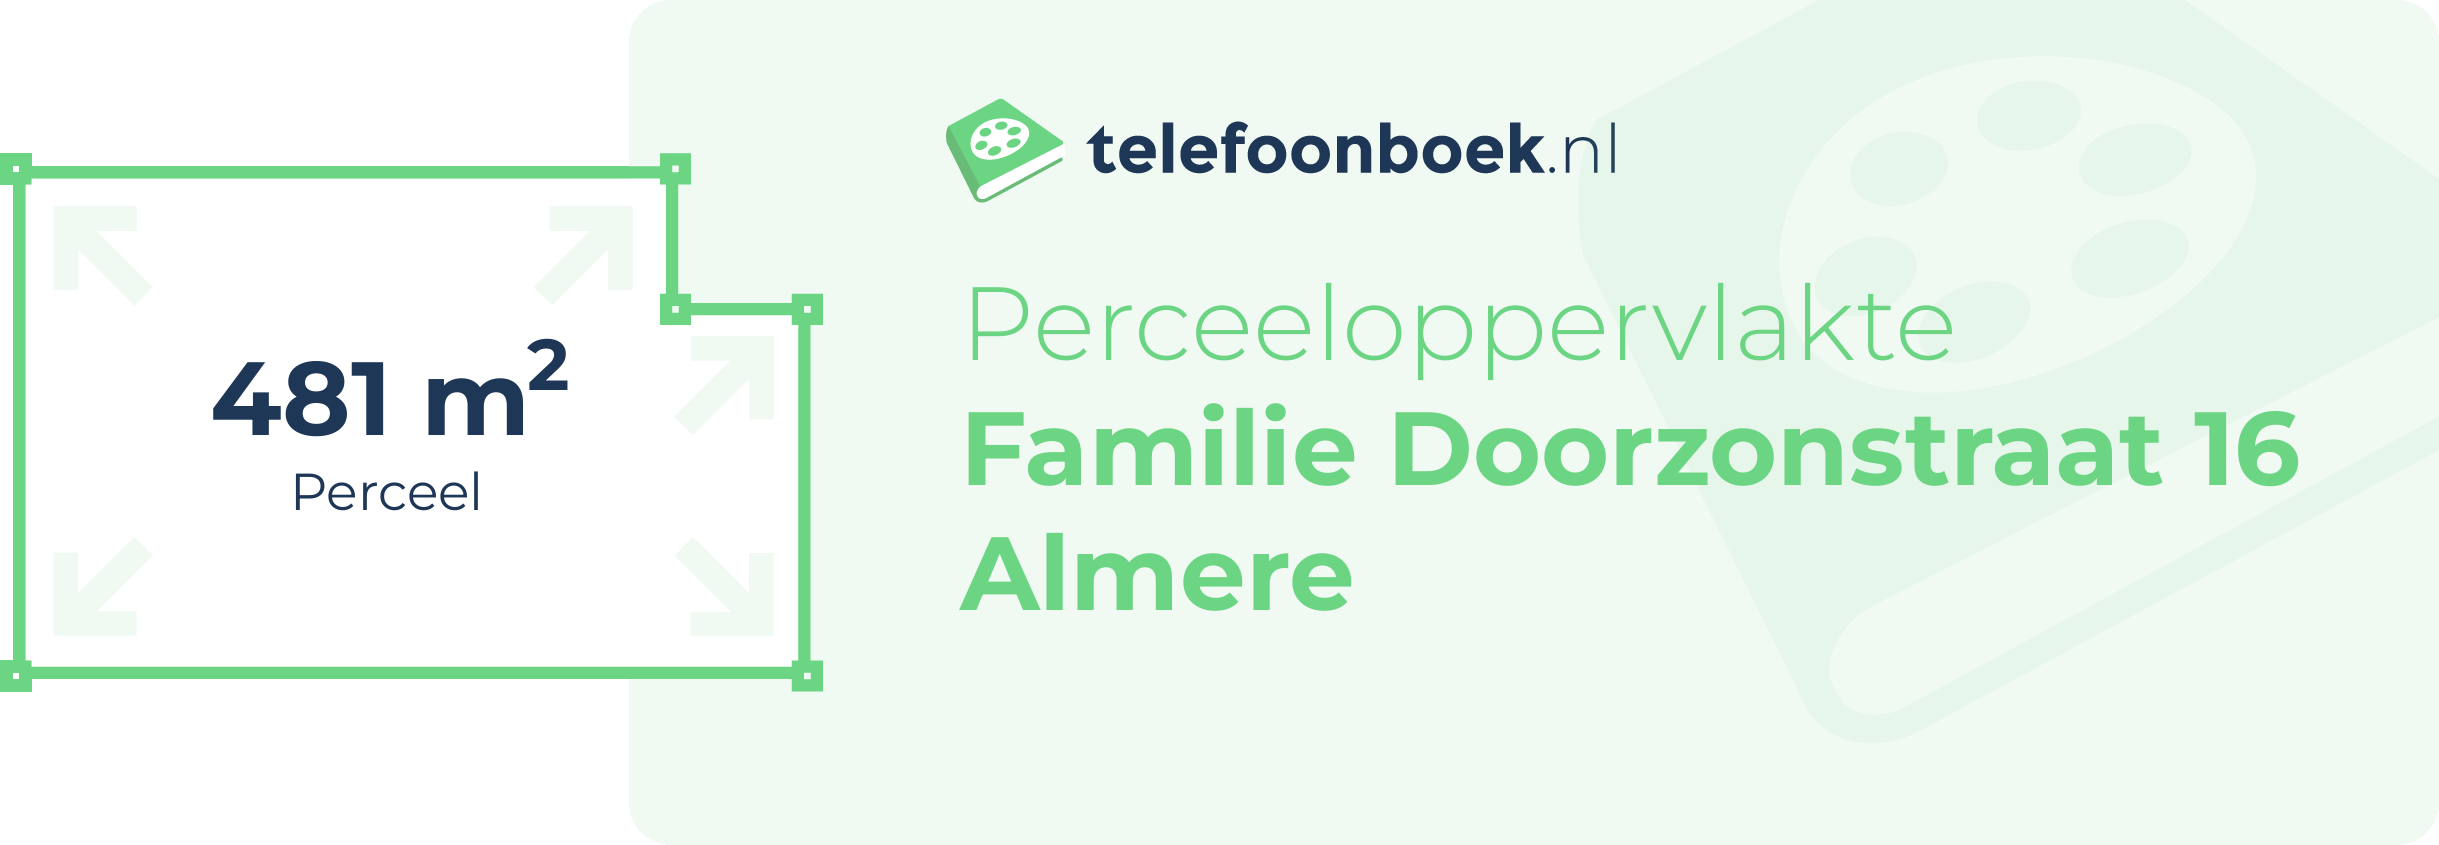 Perceeloppervlakte Familie Doorzonstraat 16 Almere